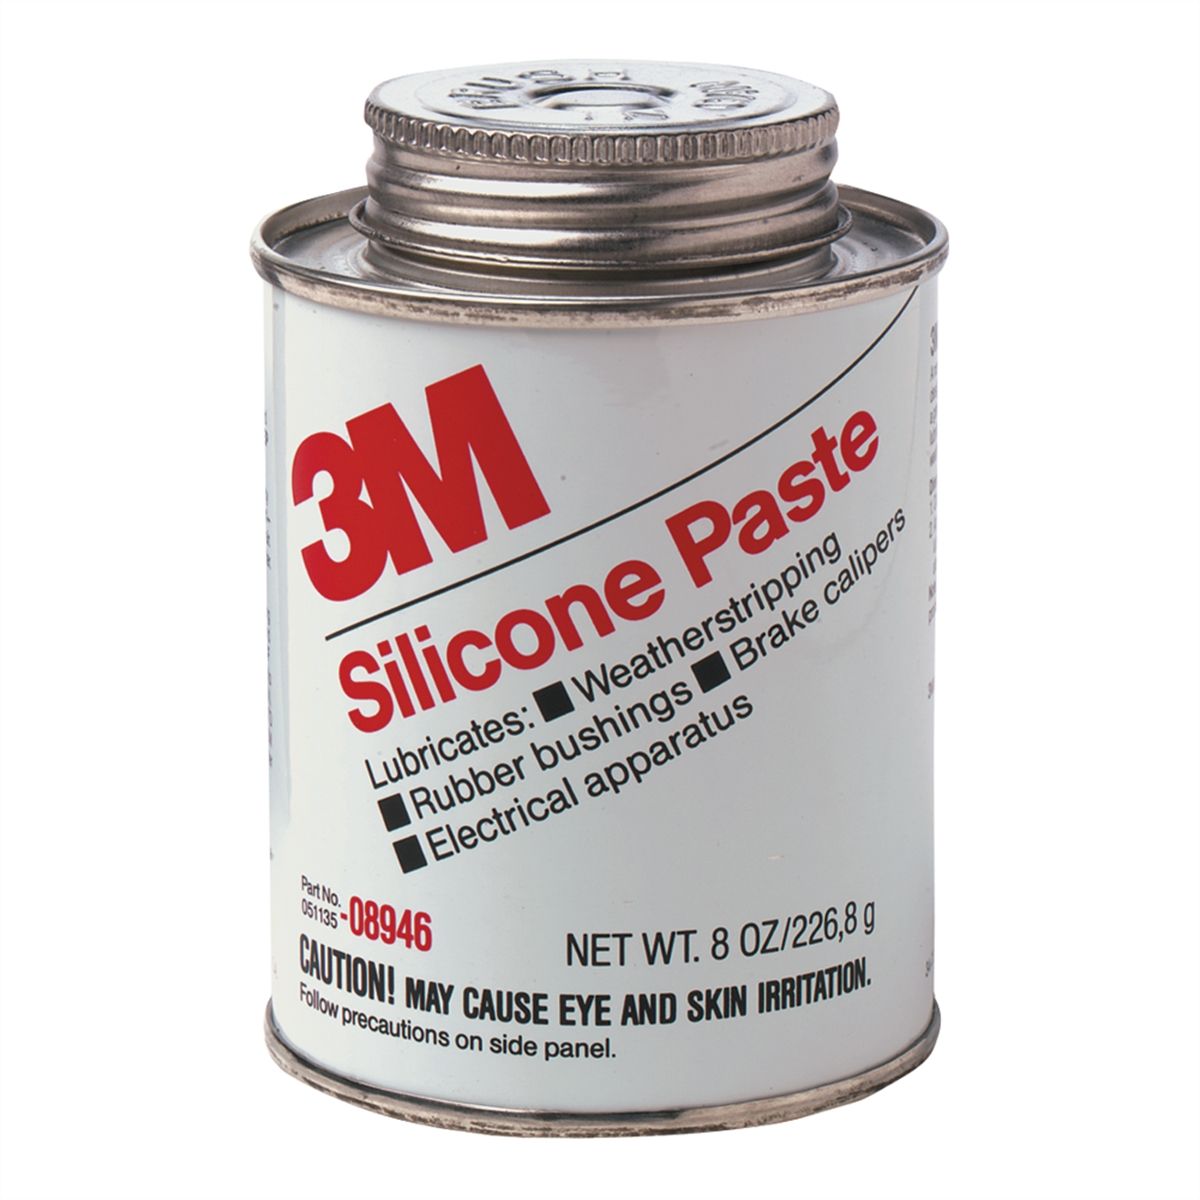 3M Silicone Sealant 08946, 8 fl oz Jar, Clear